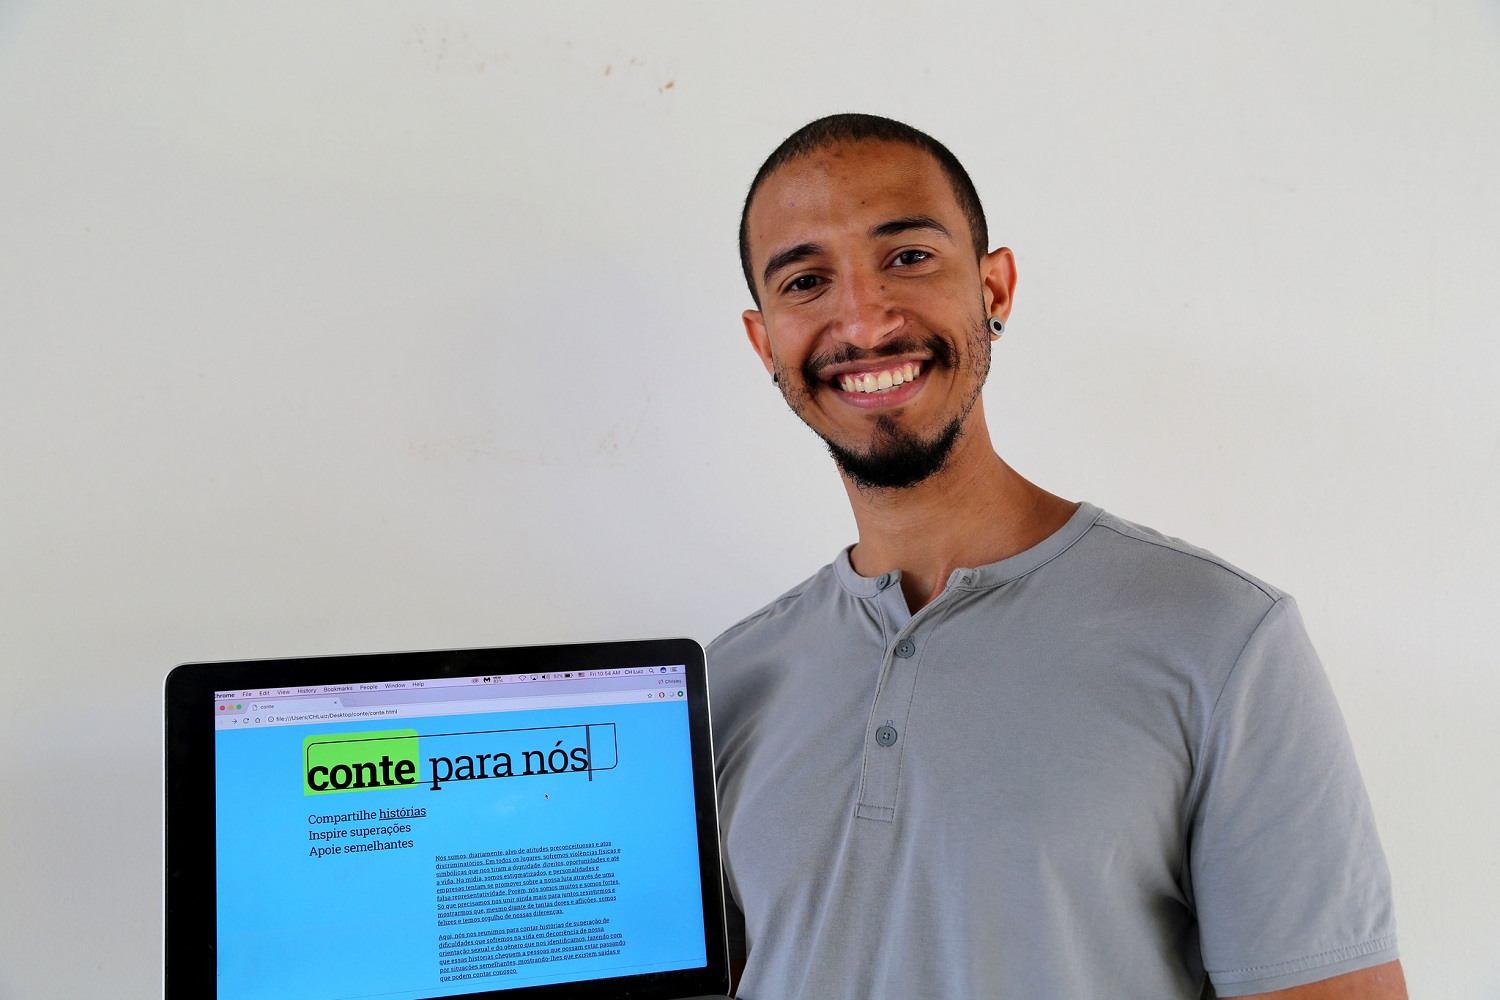 “Esse nome [Conte] remete tanto à ideia de escrever e expor as histórias quanto à de apoio e suporte que o site oferece”, diz Chrisley Luiz.